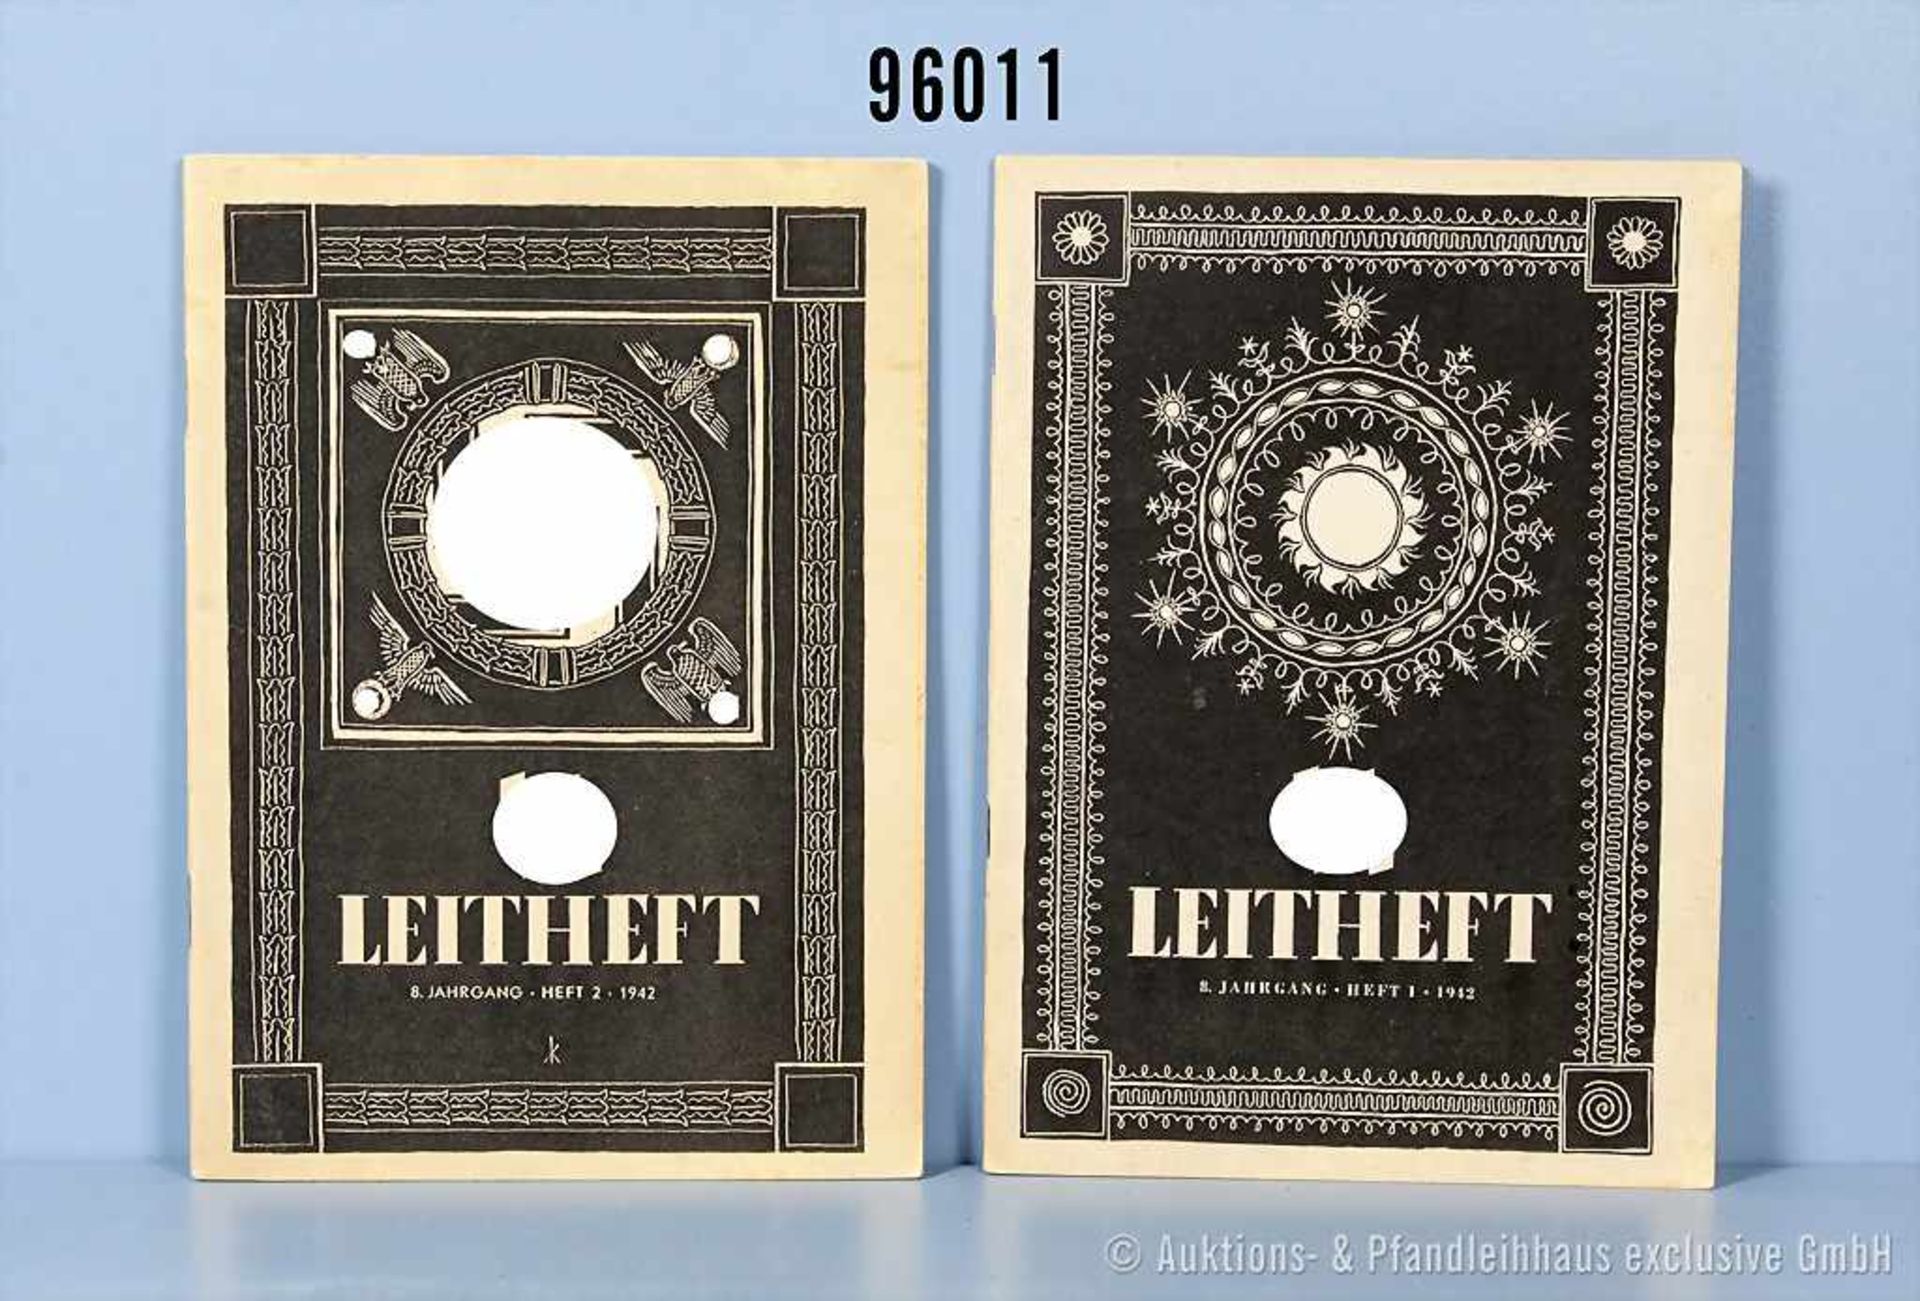 Konv. 2 SS-Leithefte, Heft 1 und Heft 2 1942, guter Zustand mit Altersspuren- - -19.00 % buyer's